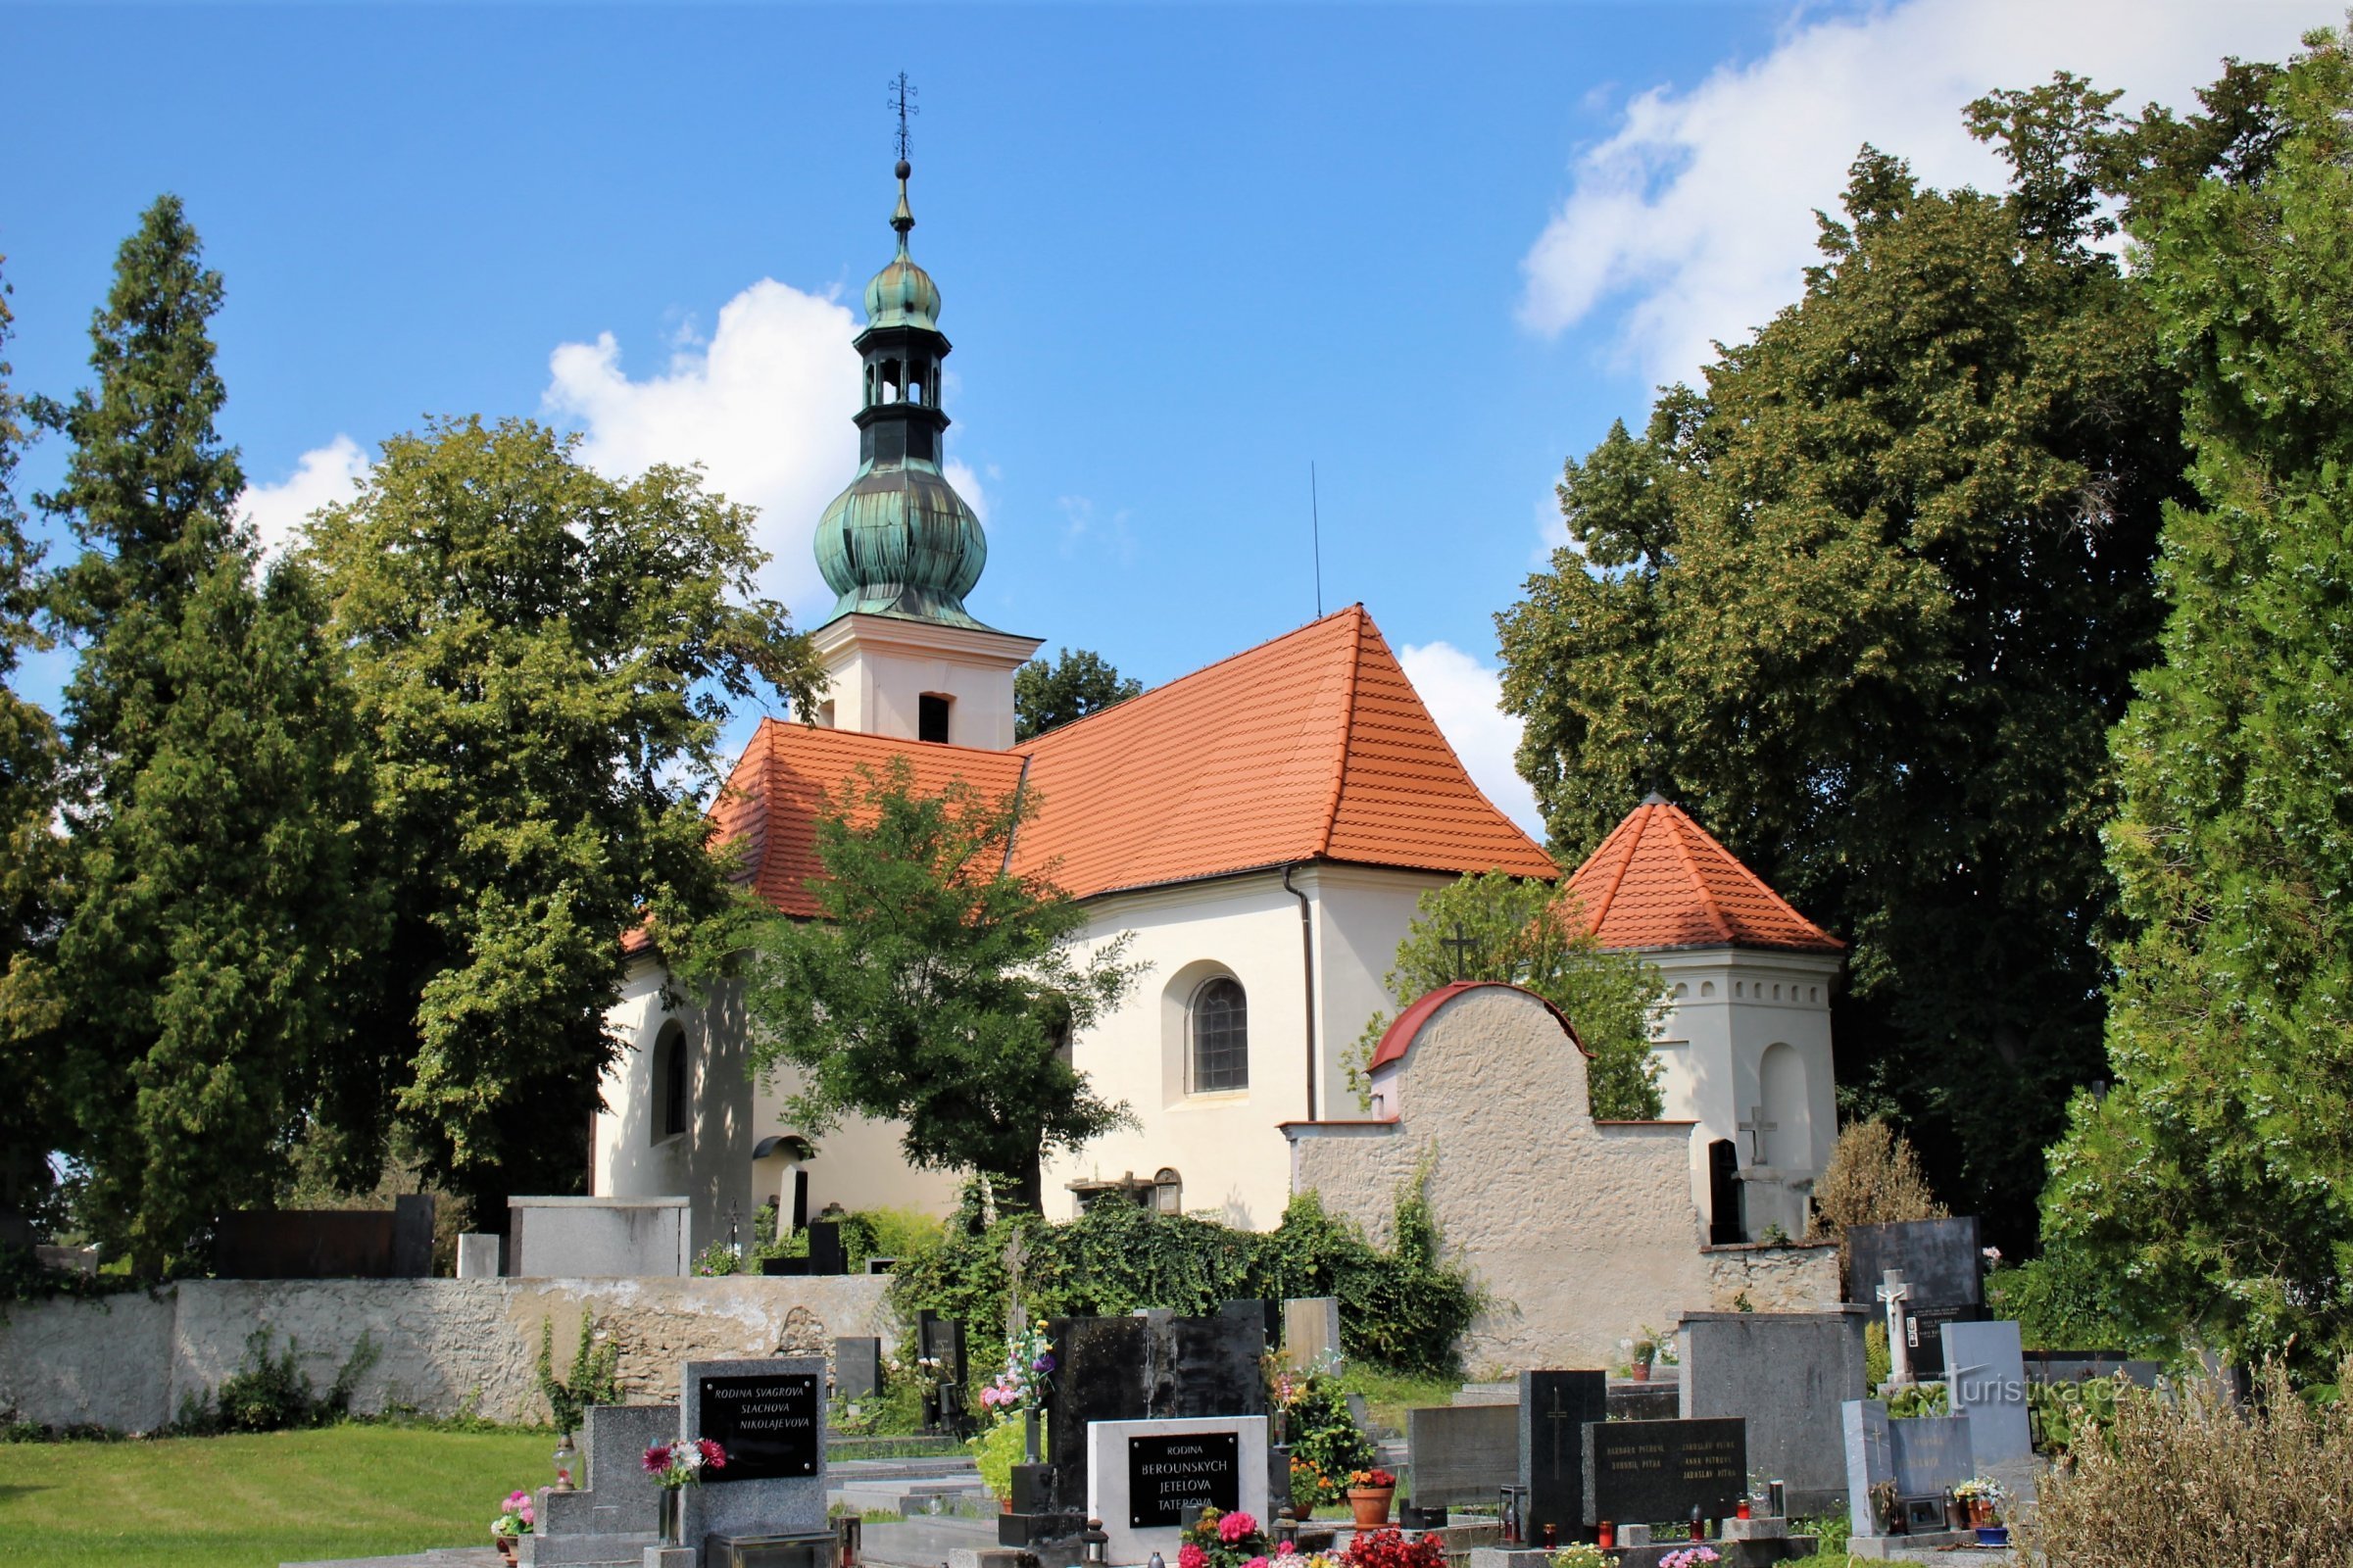 Vista geral da igreja do cemitério de S. Havel